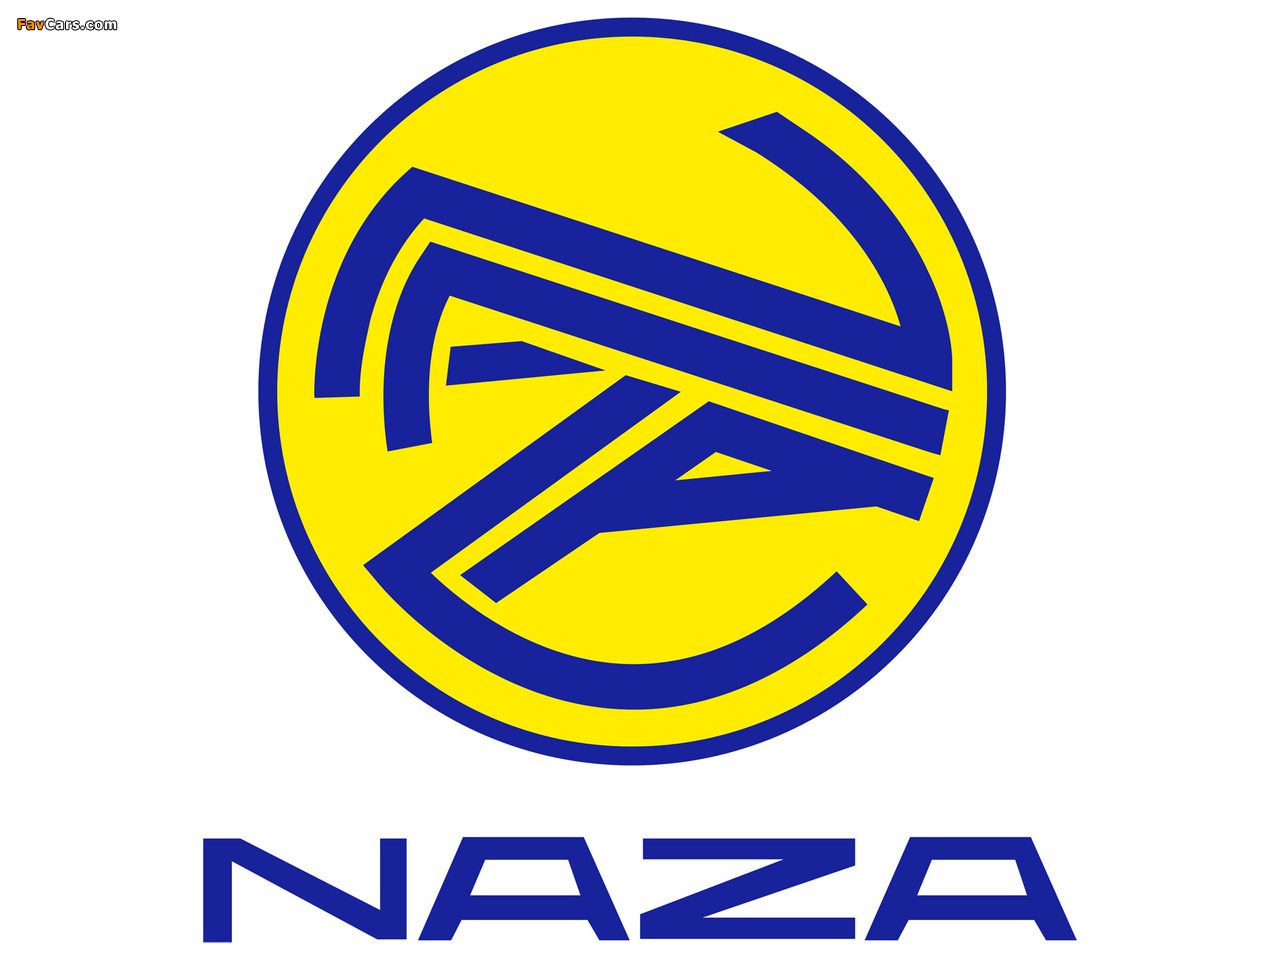 Naza images (1280 x 960)